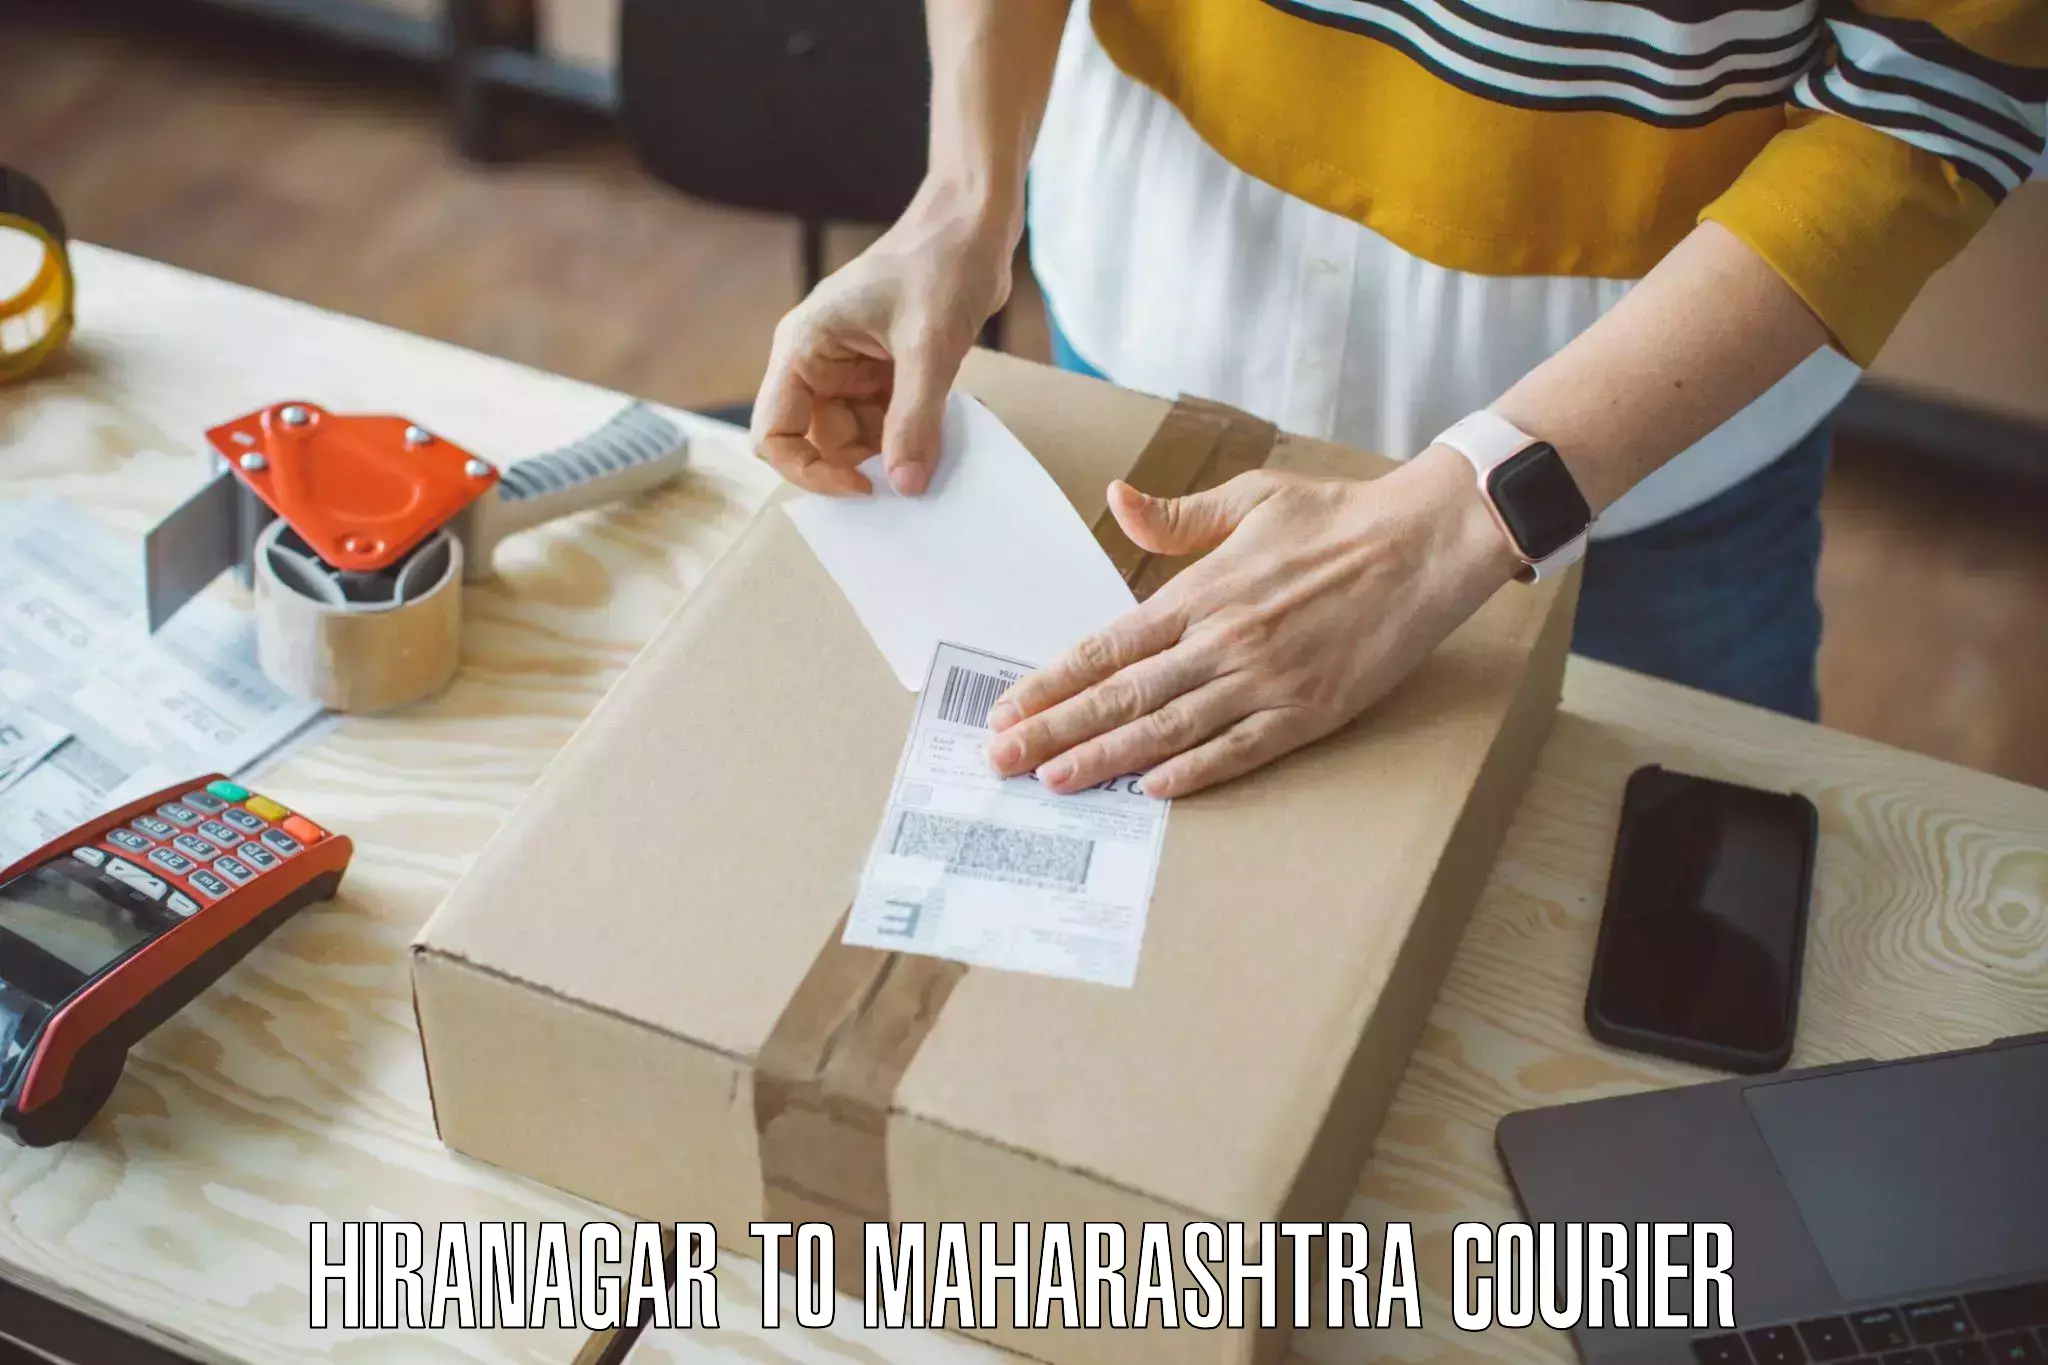 Furniture transport solutions Hiranagar to Tata Institute of Social Sciences Mumbai